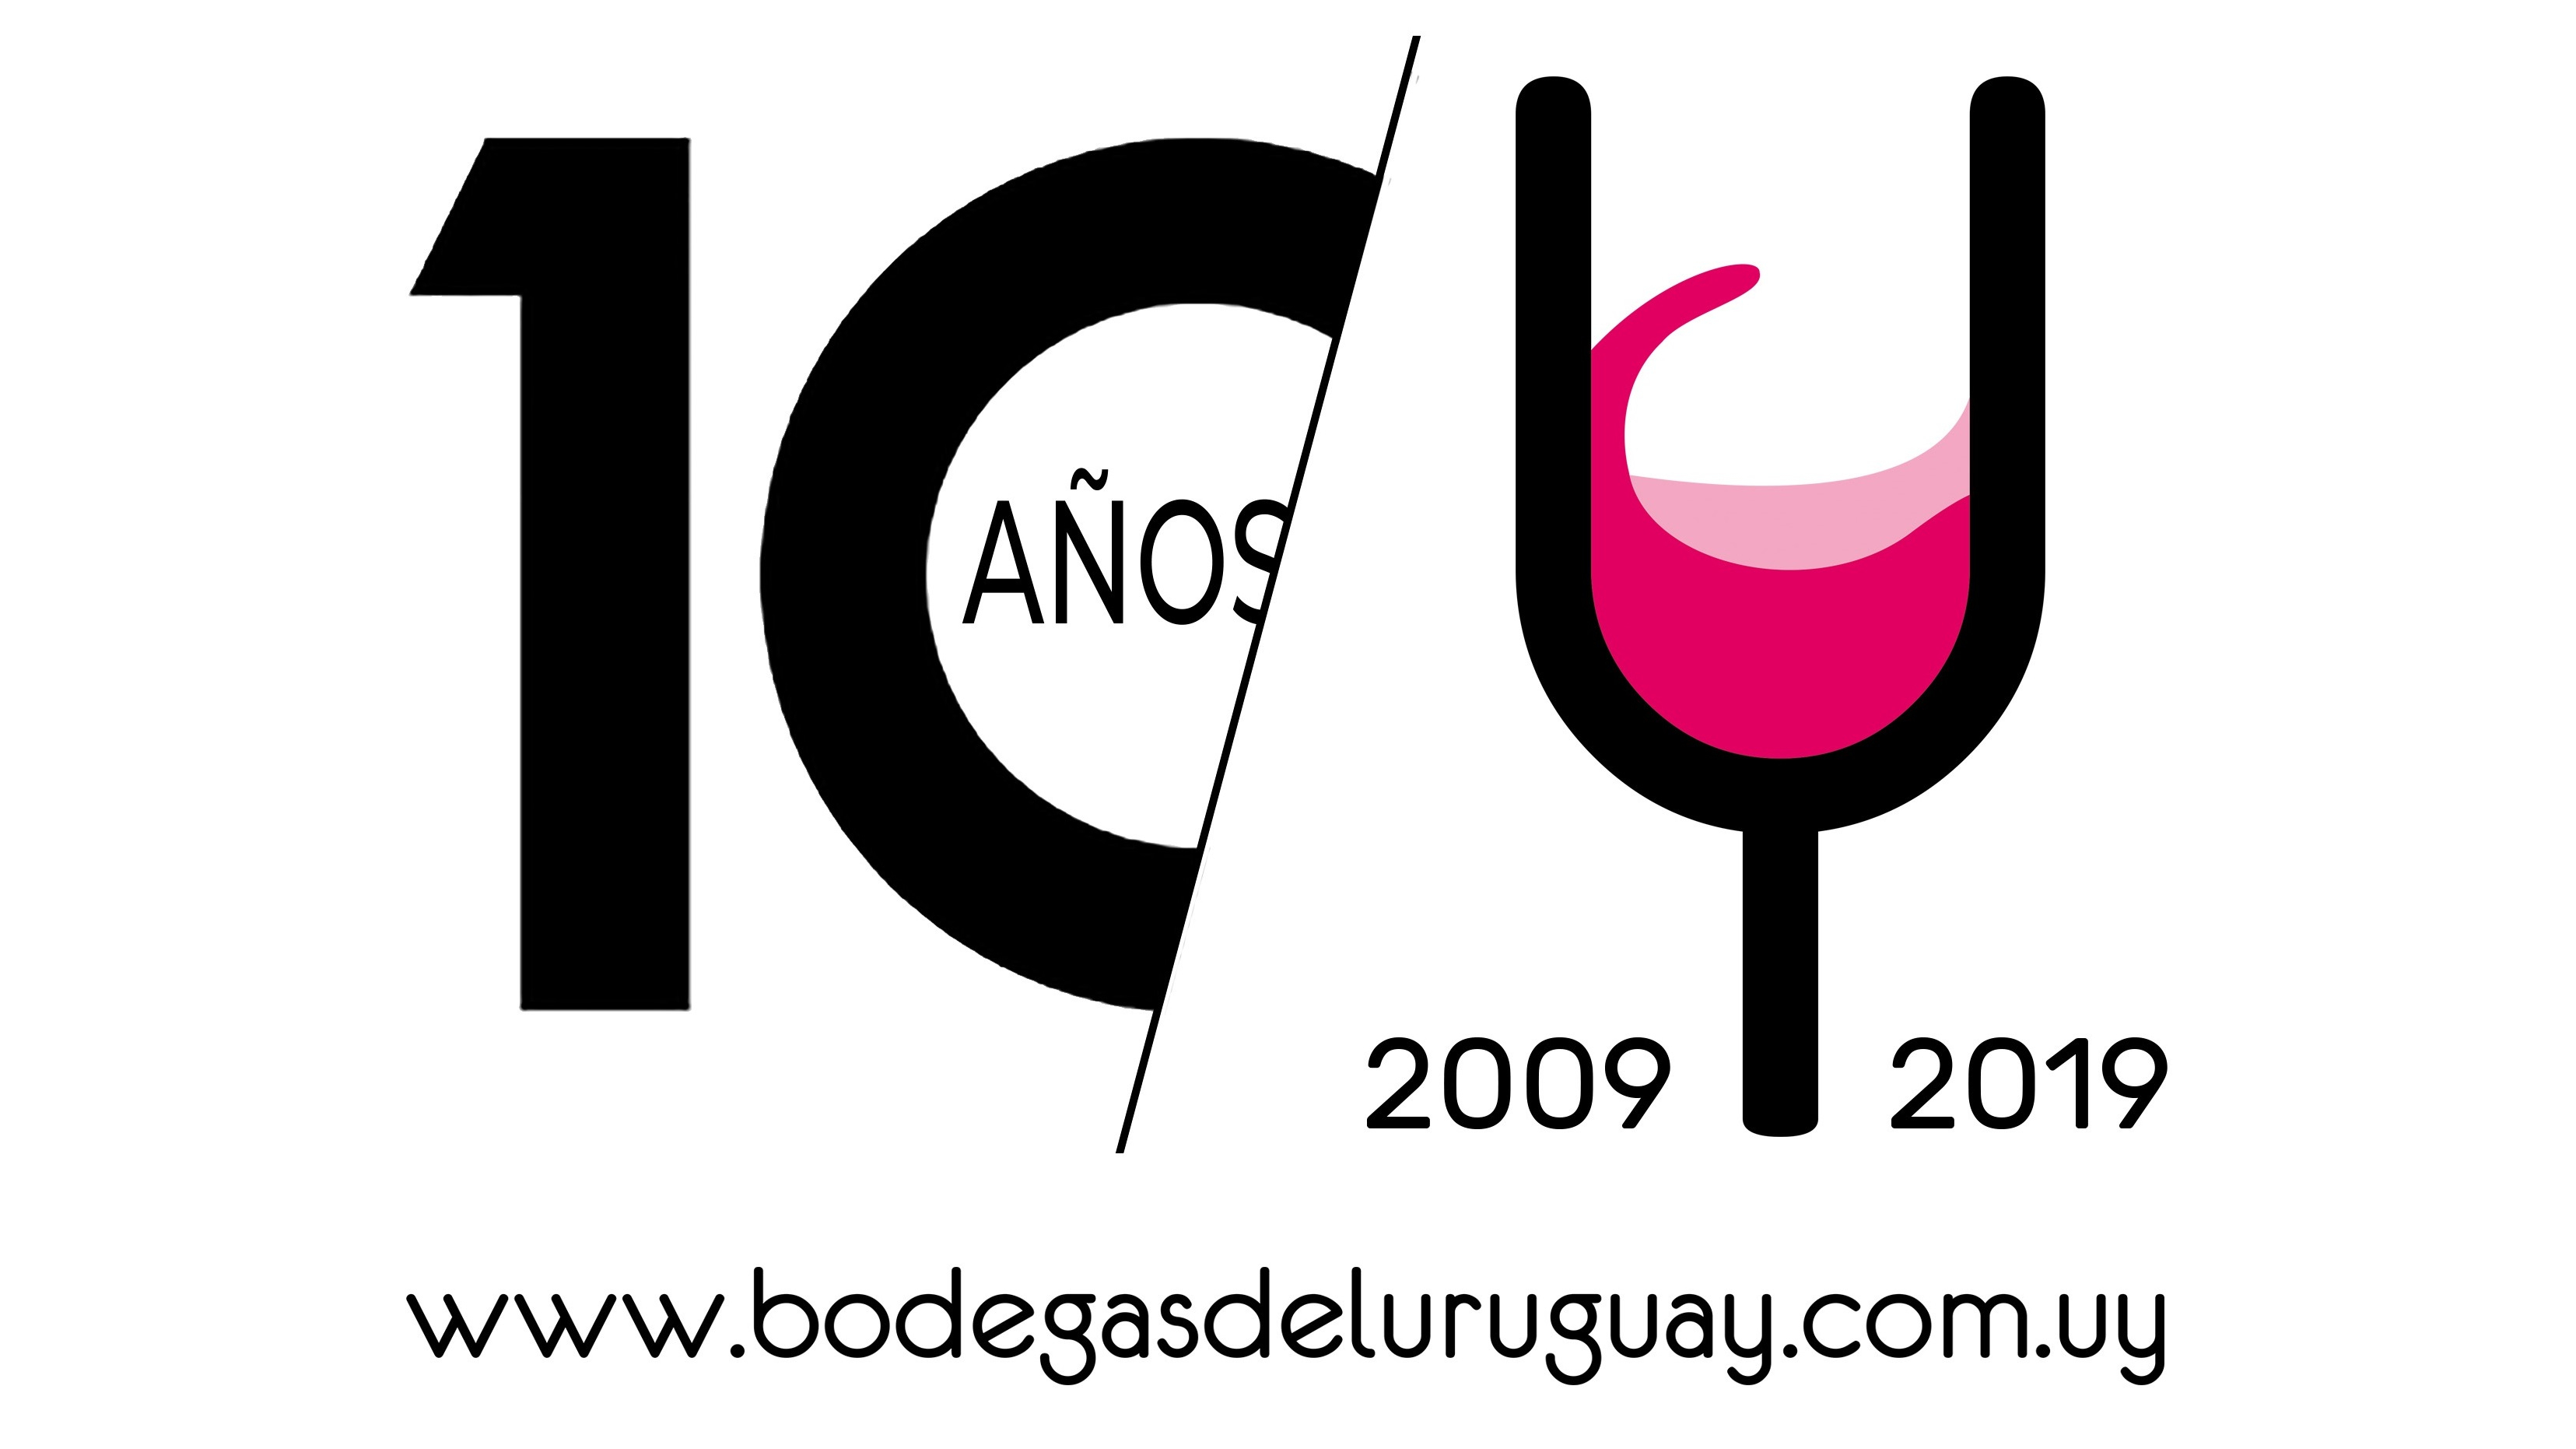  El portal Bodegas del Uruguay cumple 10 años